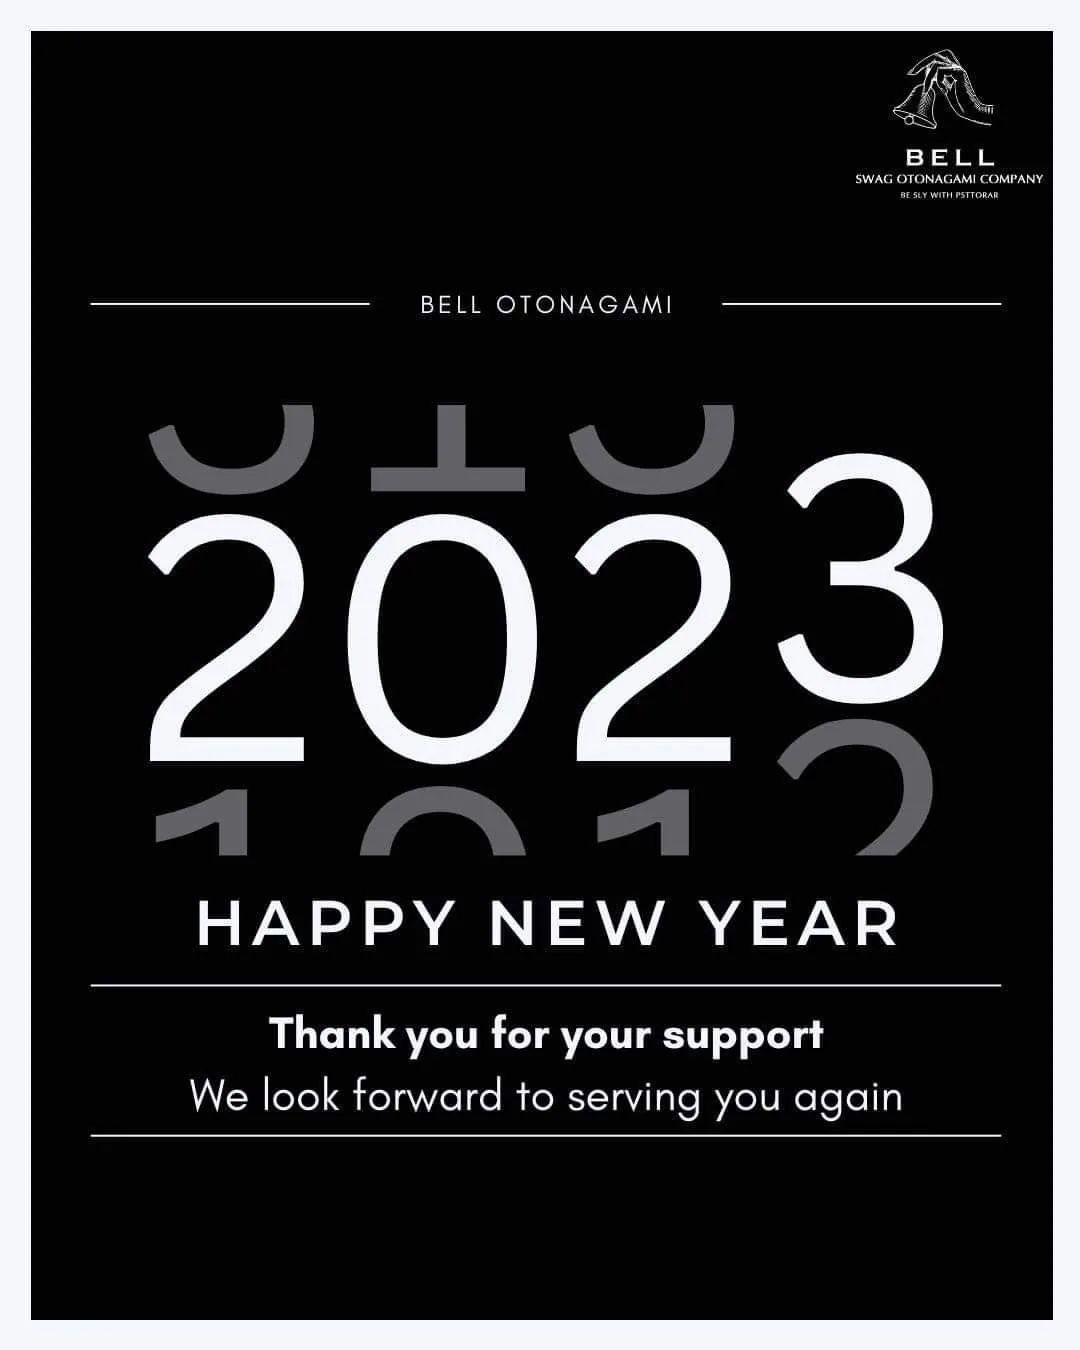 สวัสดีค่ะ
แจ้งวันหยุดสำหรับช่วงหยุดยาวปีใหม่นี้นะคะ
ร้านจะหยุดตั้งแต่วันที่ 29 ธันวาคมจนไปถึง 4 มกราคม 2023 นะคะ
จะเปิดให้บริการอีกทีในวันที่ 5 มกราคม 2023
สำหรับในปีใหม่นี้ ทางร้านก็ขอให้คุณลูกค้าทุกท่านมีความสุขมากๆ มีความสุขและสนุกกับวันหยุดยาว  เดินทางกลับบ้านหรือท่องเที่ยว️
โดยปลอดภัยนะคะ ️  F.B BELL Otonagami salon  LINE ID@skk6845h  #ร้านทำผมญี่ปุ่น #ร้านทำสีผมไม่เสีย #ออกแบบทรงผม #สีผมสุดฮิต  #สีผมสวยๆ #ผมสวย #ตัดผม #สีผมสไตล์ญี่ปุ่น #ทรงผมสวยๆ #ช่างญี่ปุ่น